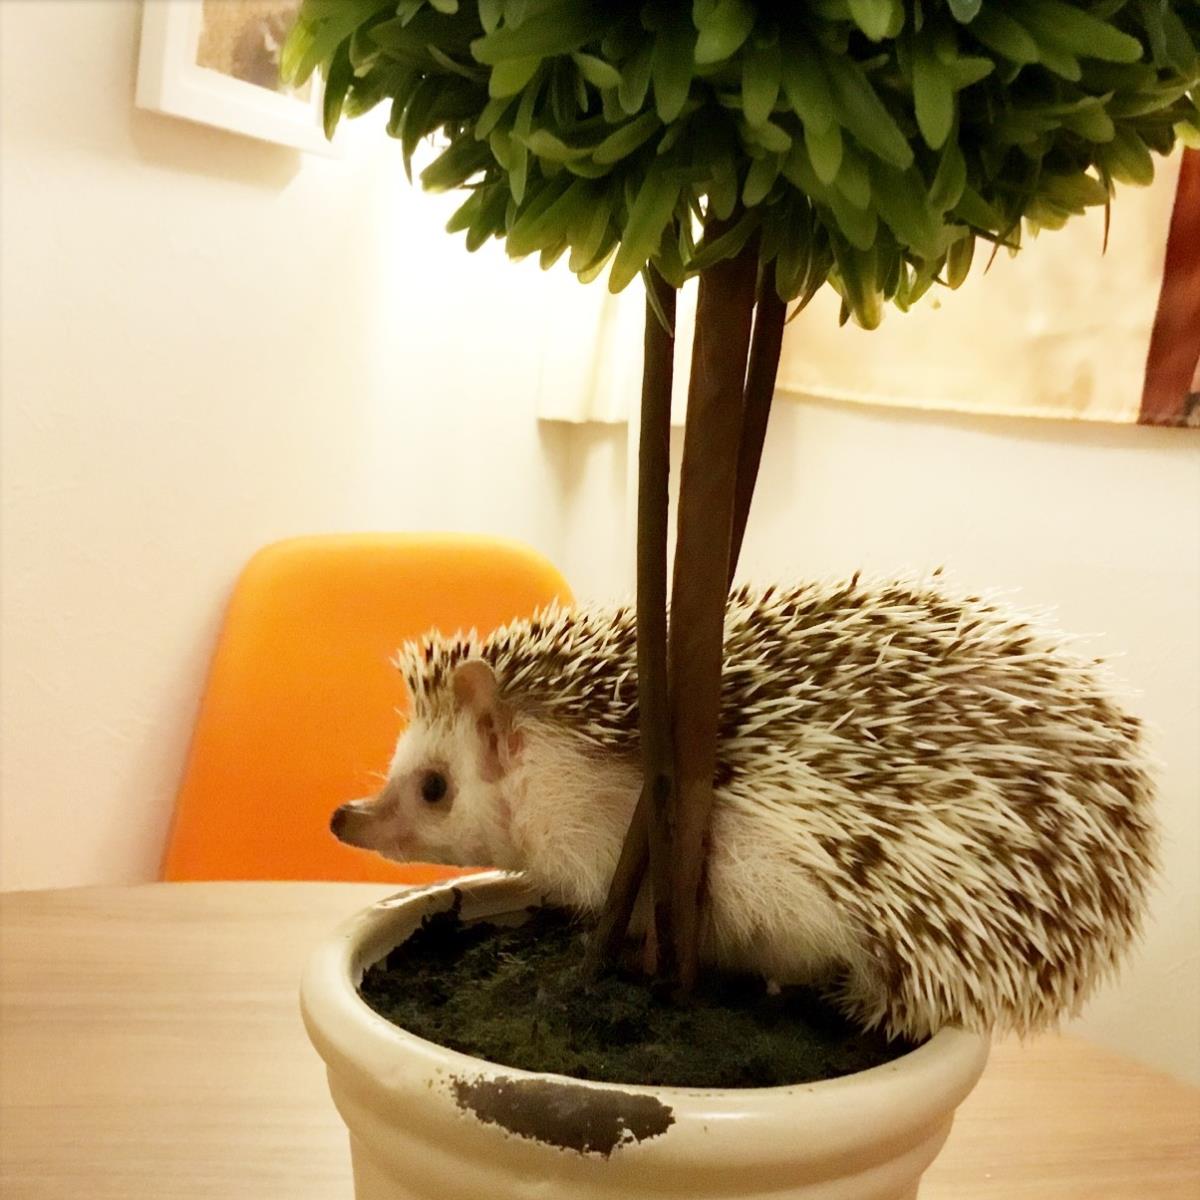 Hedgehog & Cafe [CAFE DE HARI]